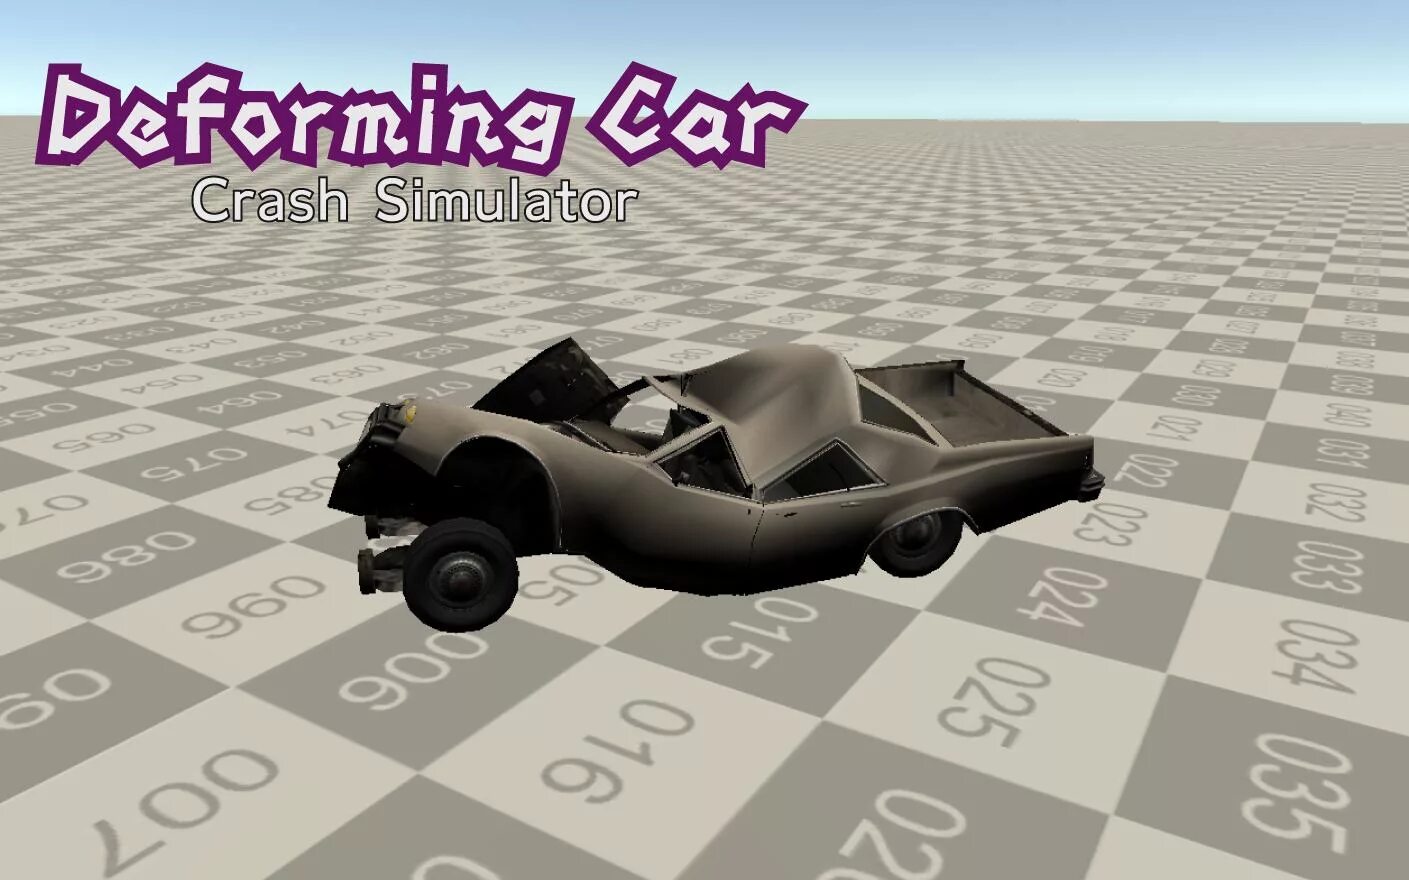 Дефарминг кар краш 2. Deforming car crash Simulator. Кар краш симулятор моды. Deforming car crash.